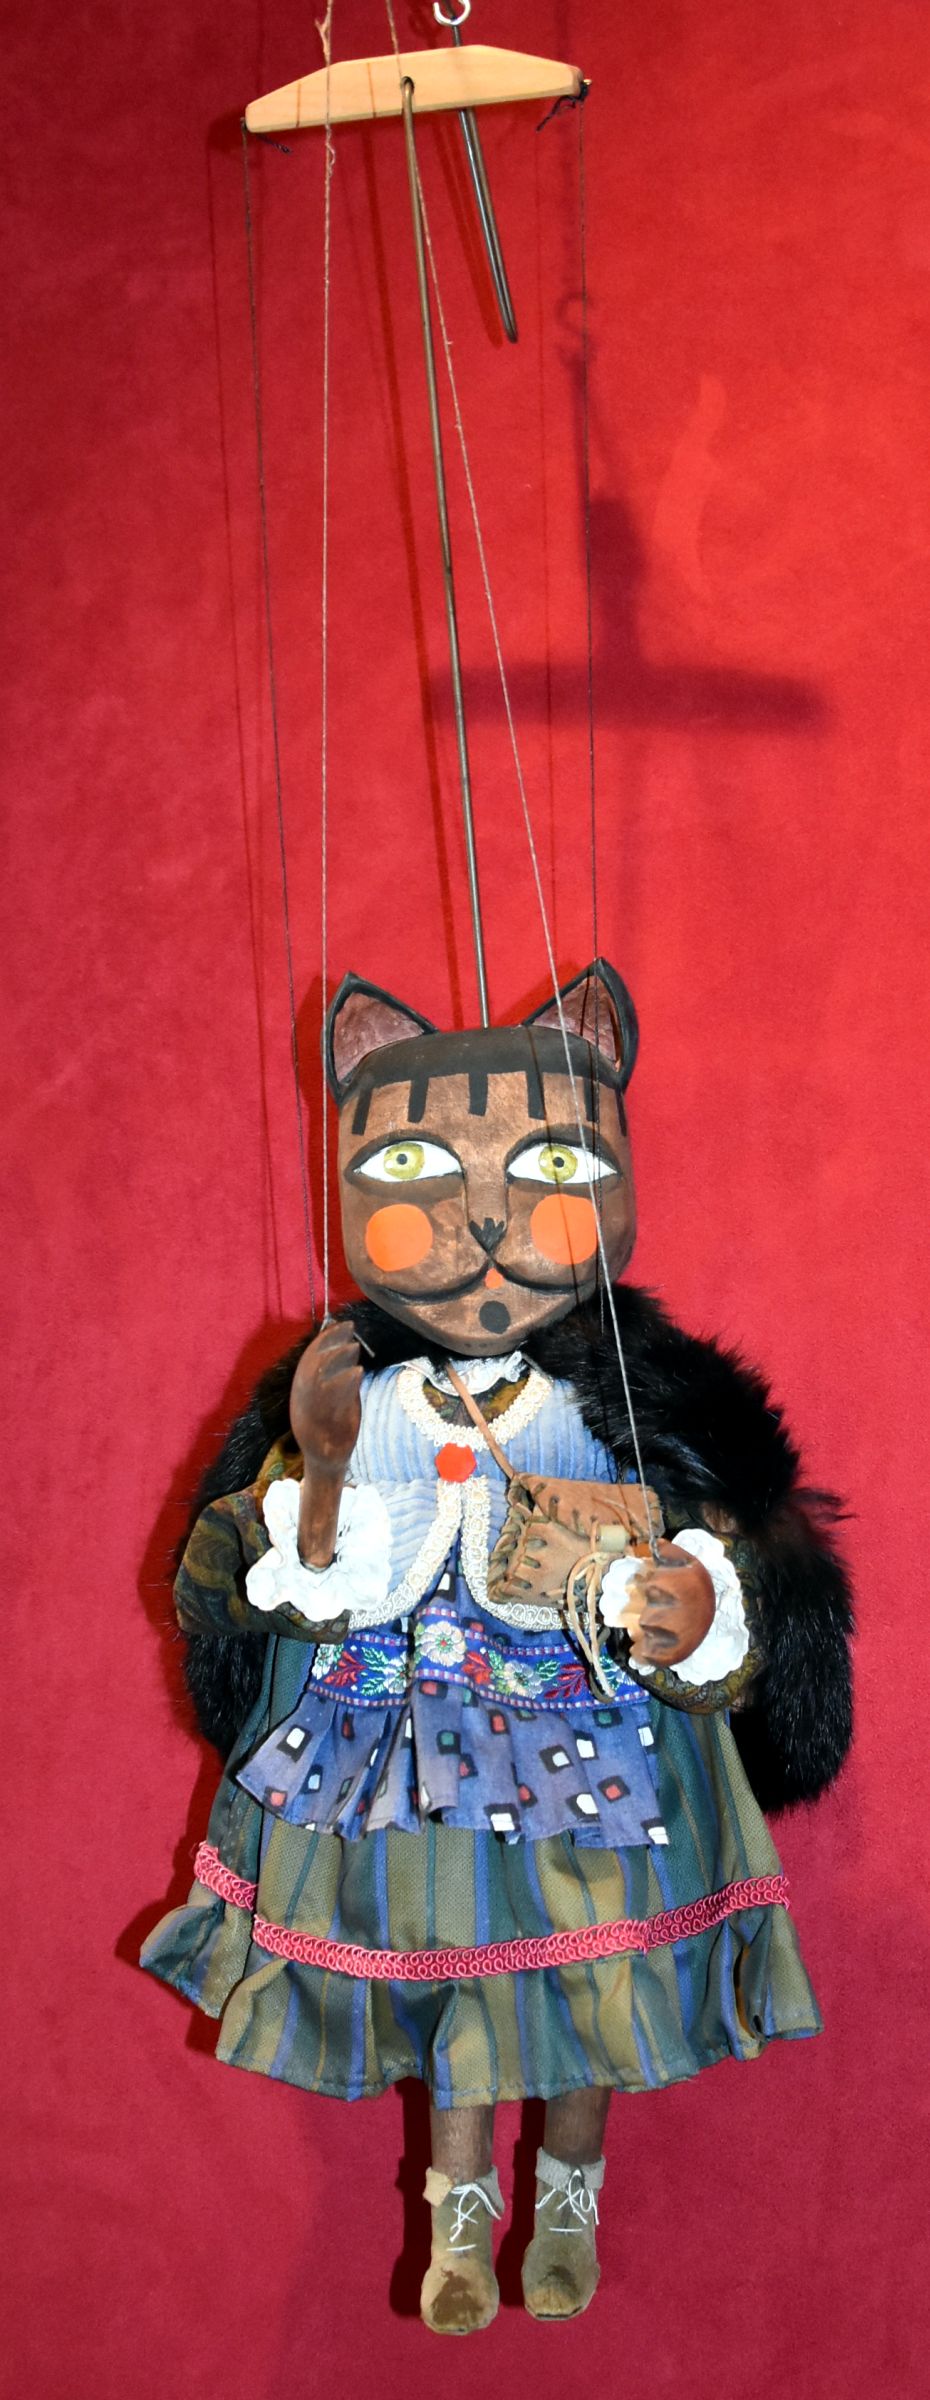 Katzendame als Marionette